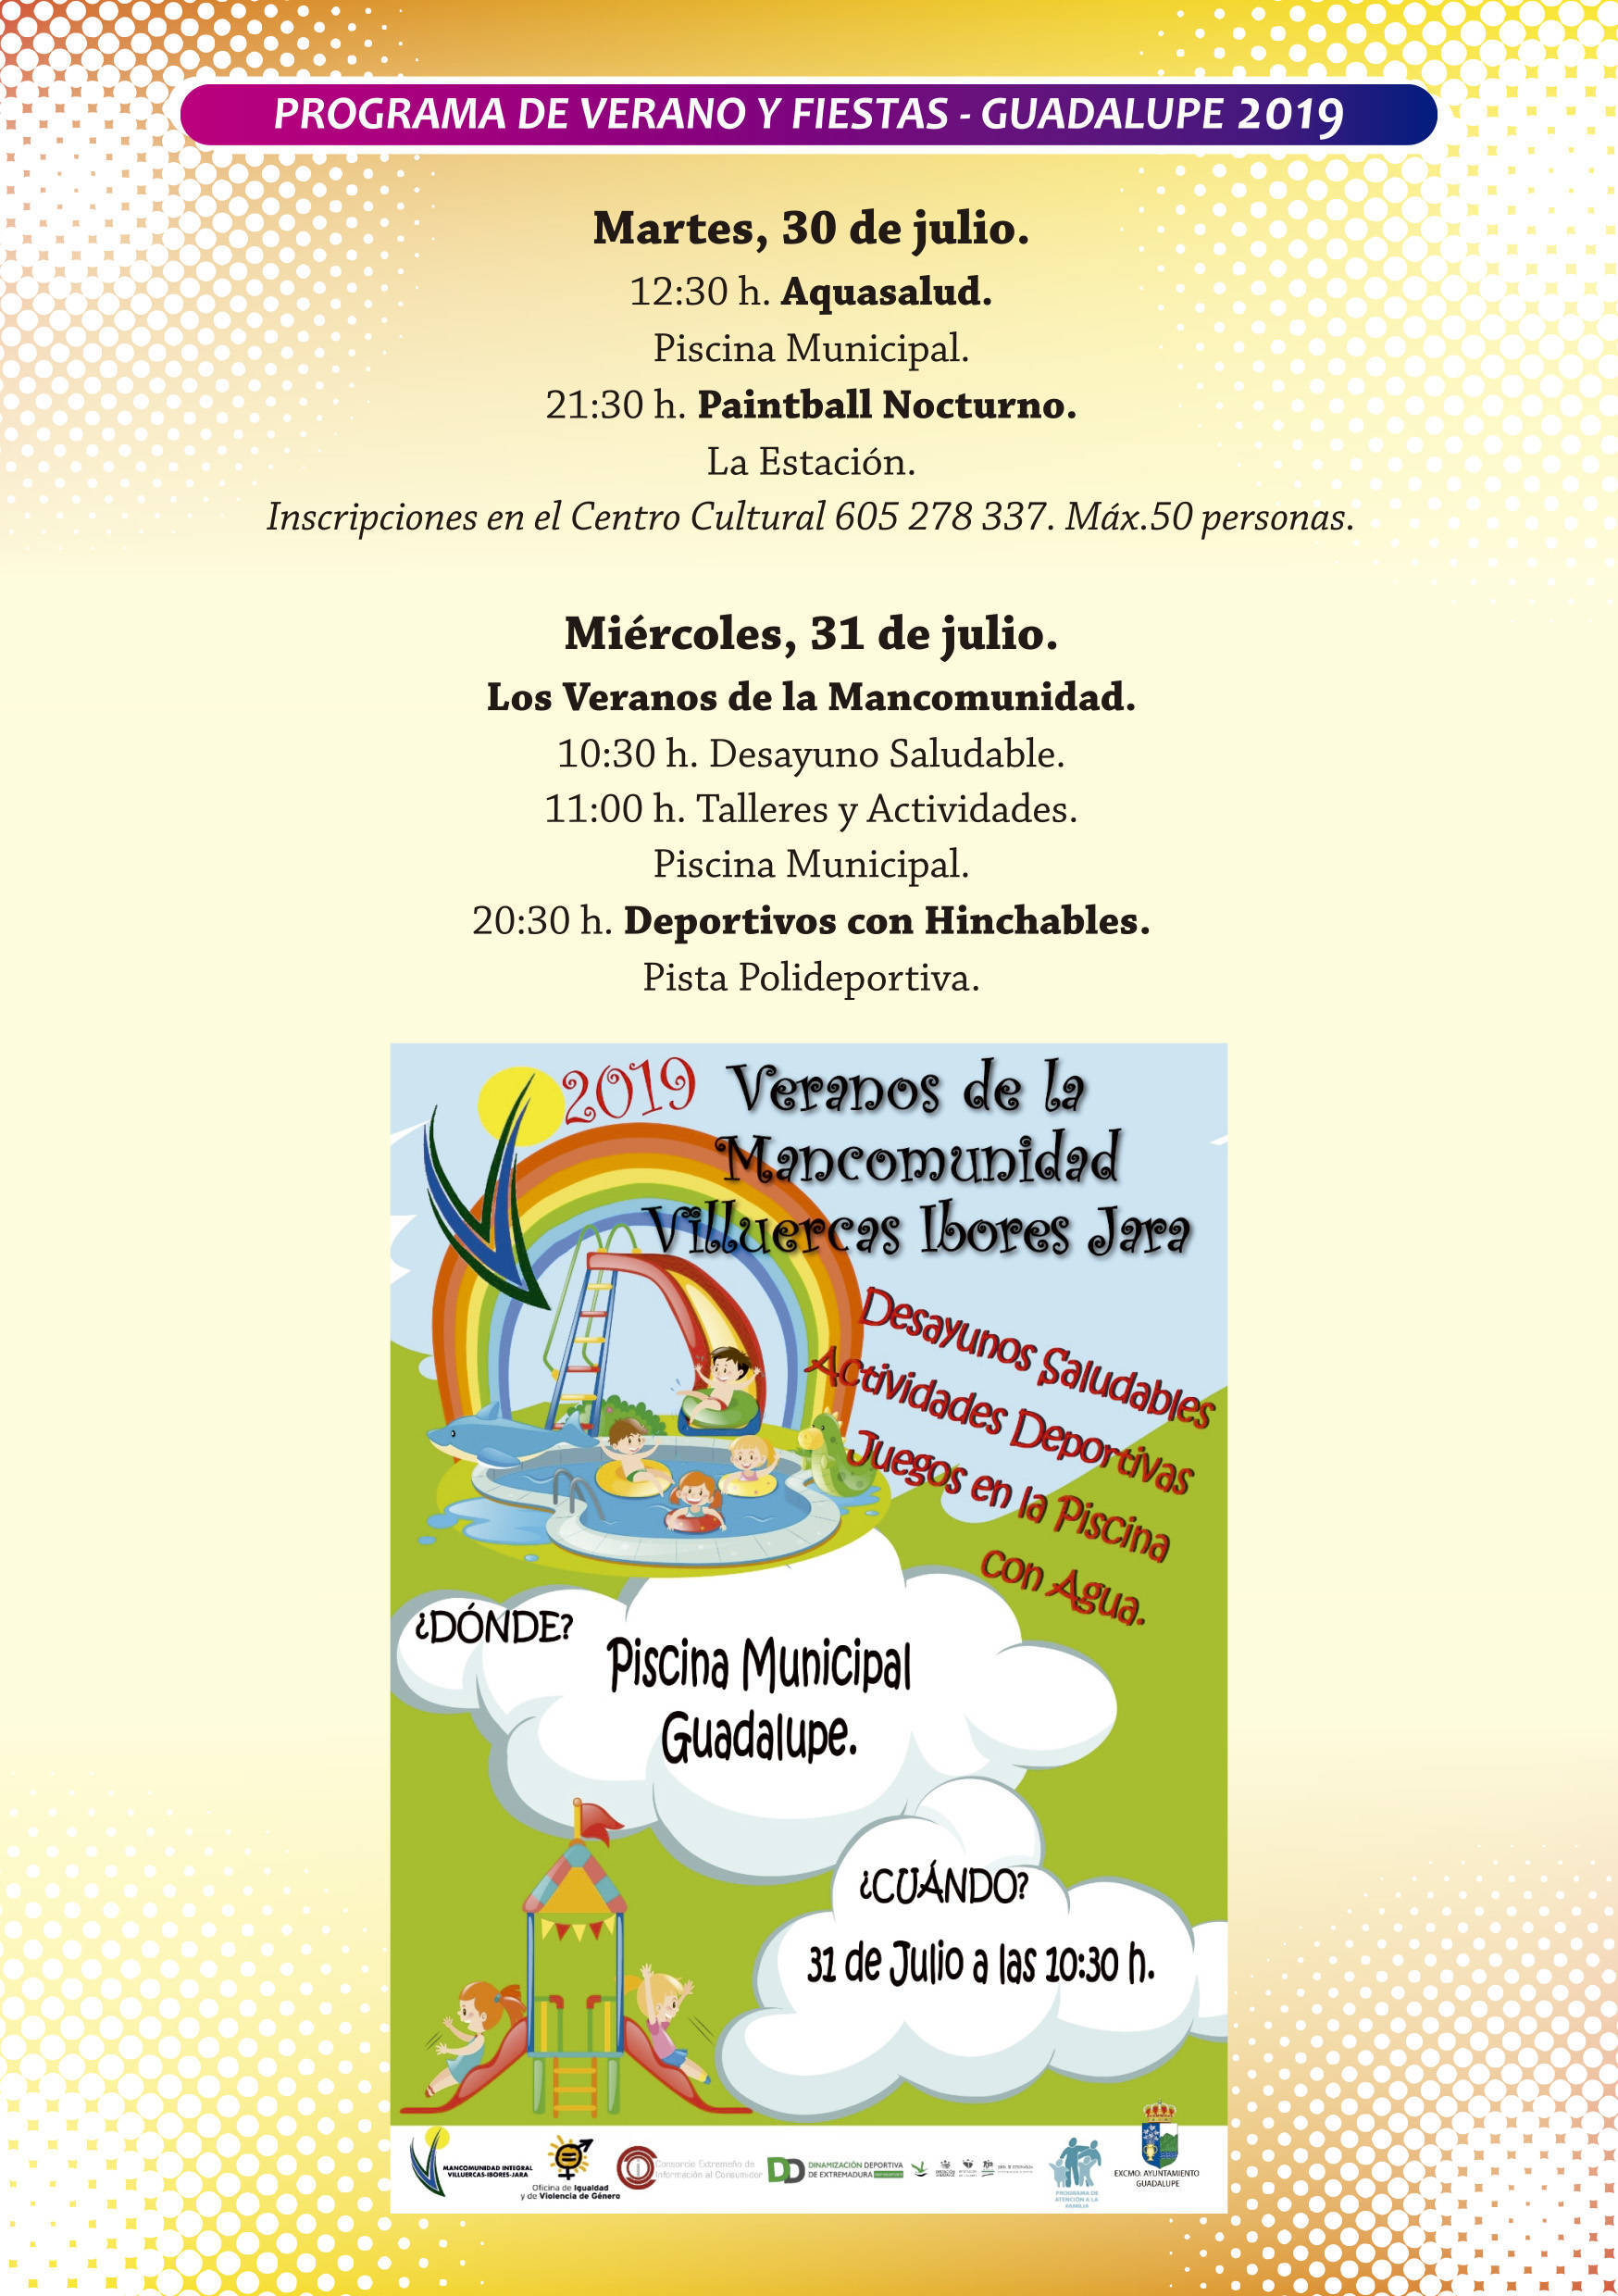 Programa de verano y fiestas 2019 - Guadalupe (Cáceres) 6